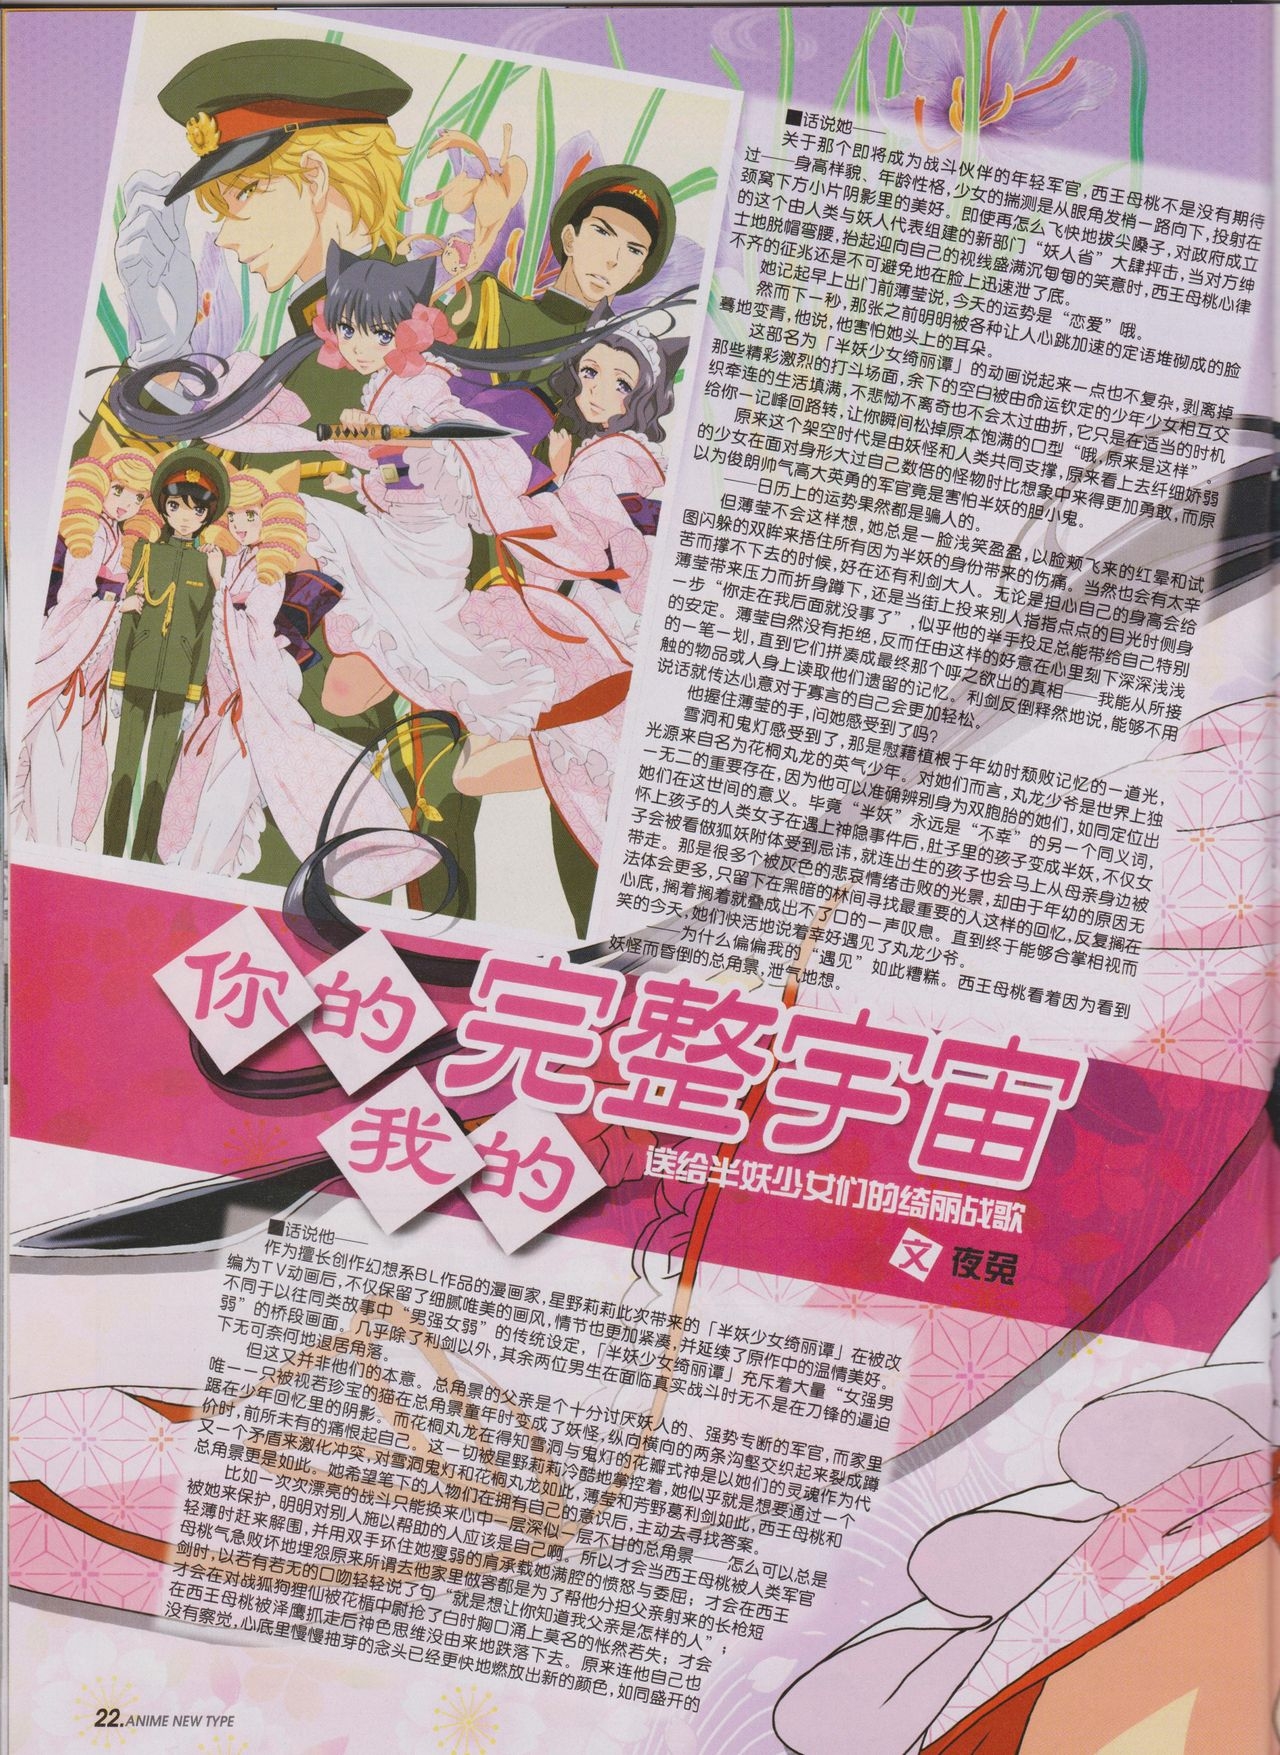 Anime New Type Vol.096 23